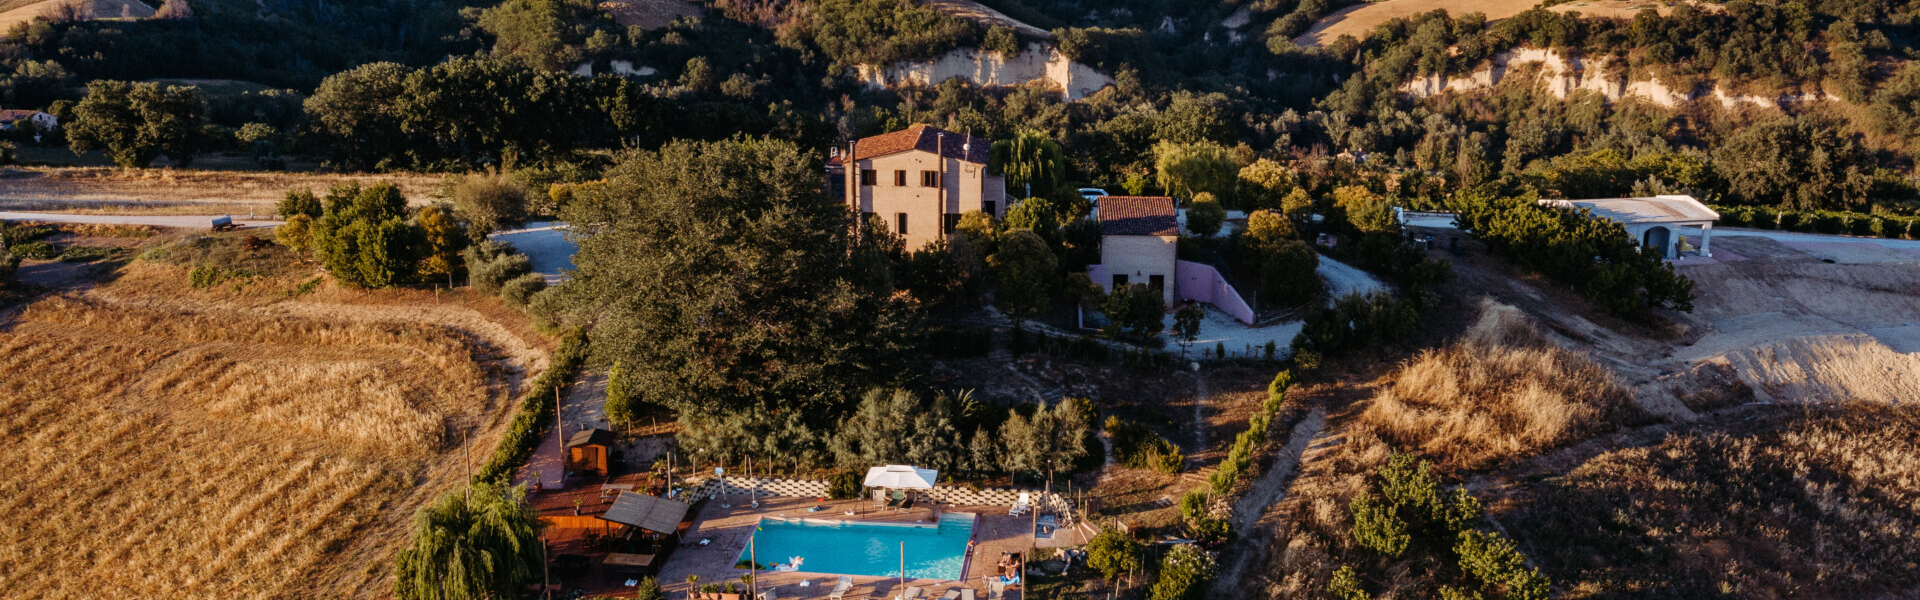 Luchtfoto Agricola la Casetta tussen de heuvels in Italië zwembad